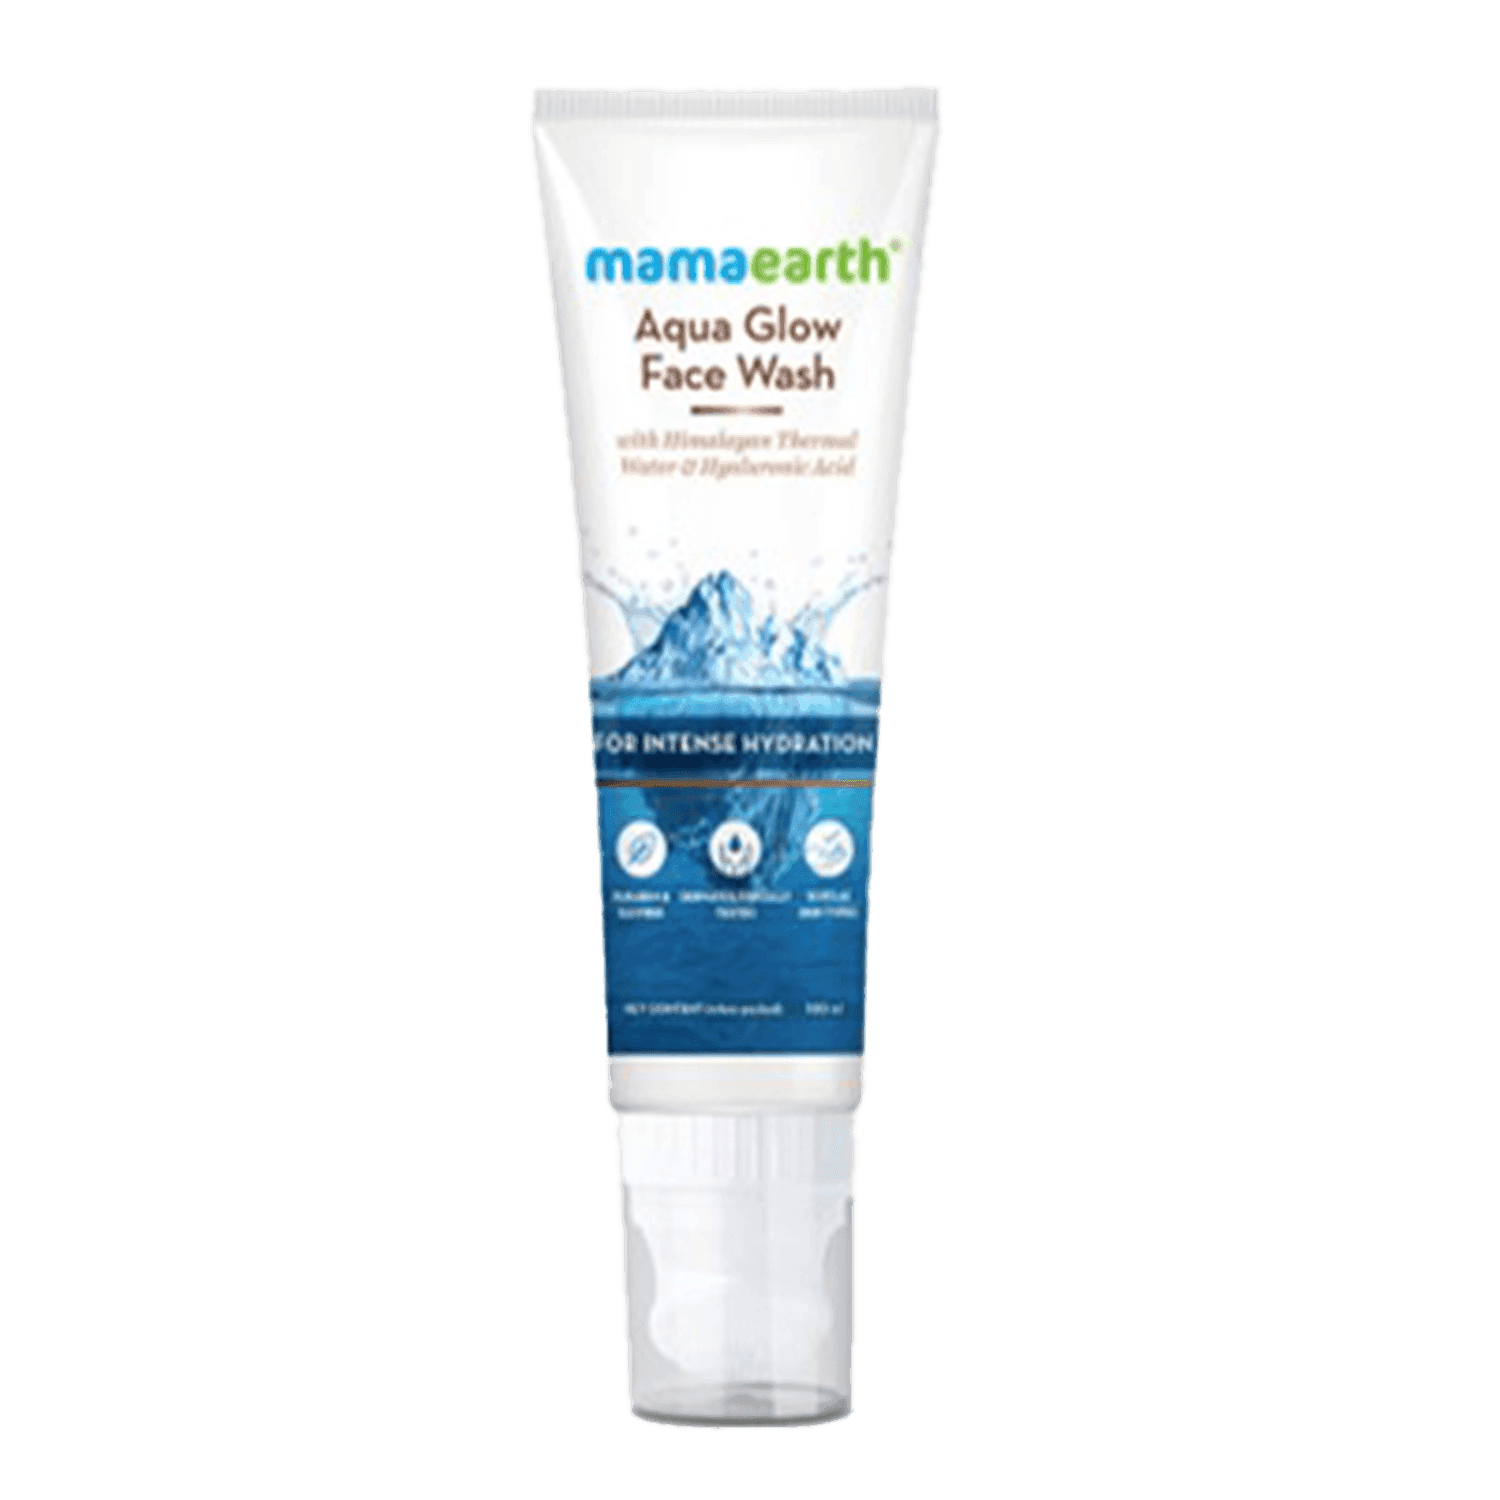 mamaearth aqua glow face wash (100ml)